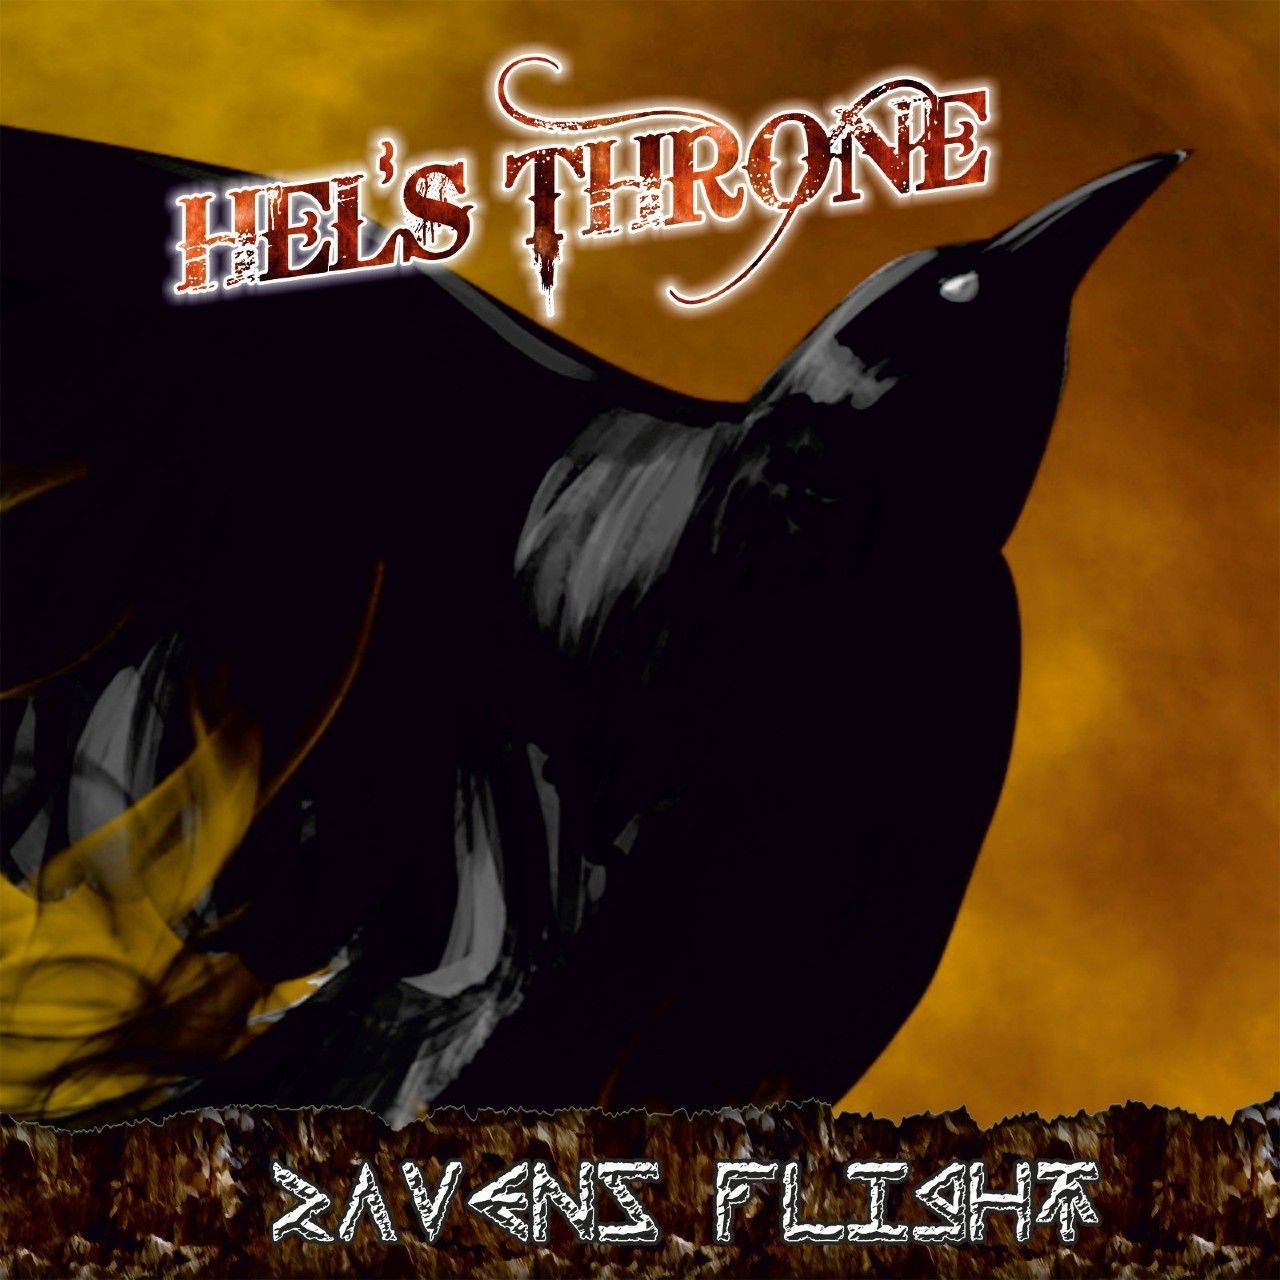 Hel's Throne - Ravens Flight (clip)